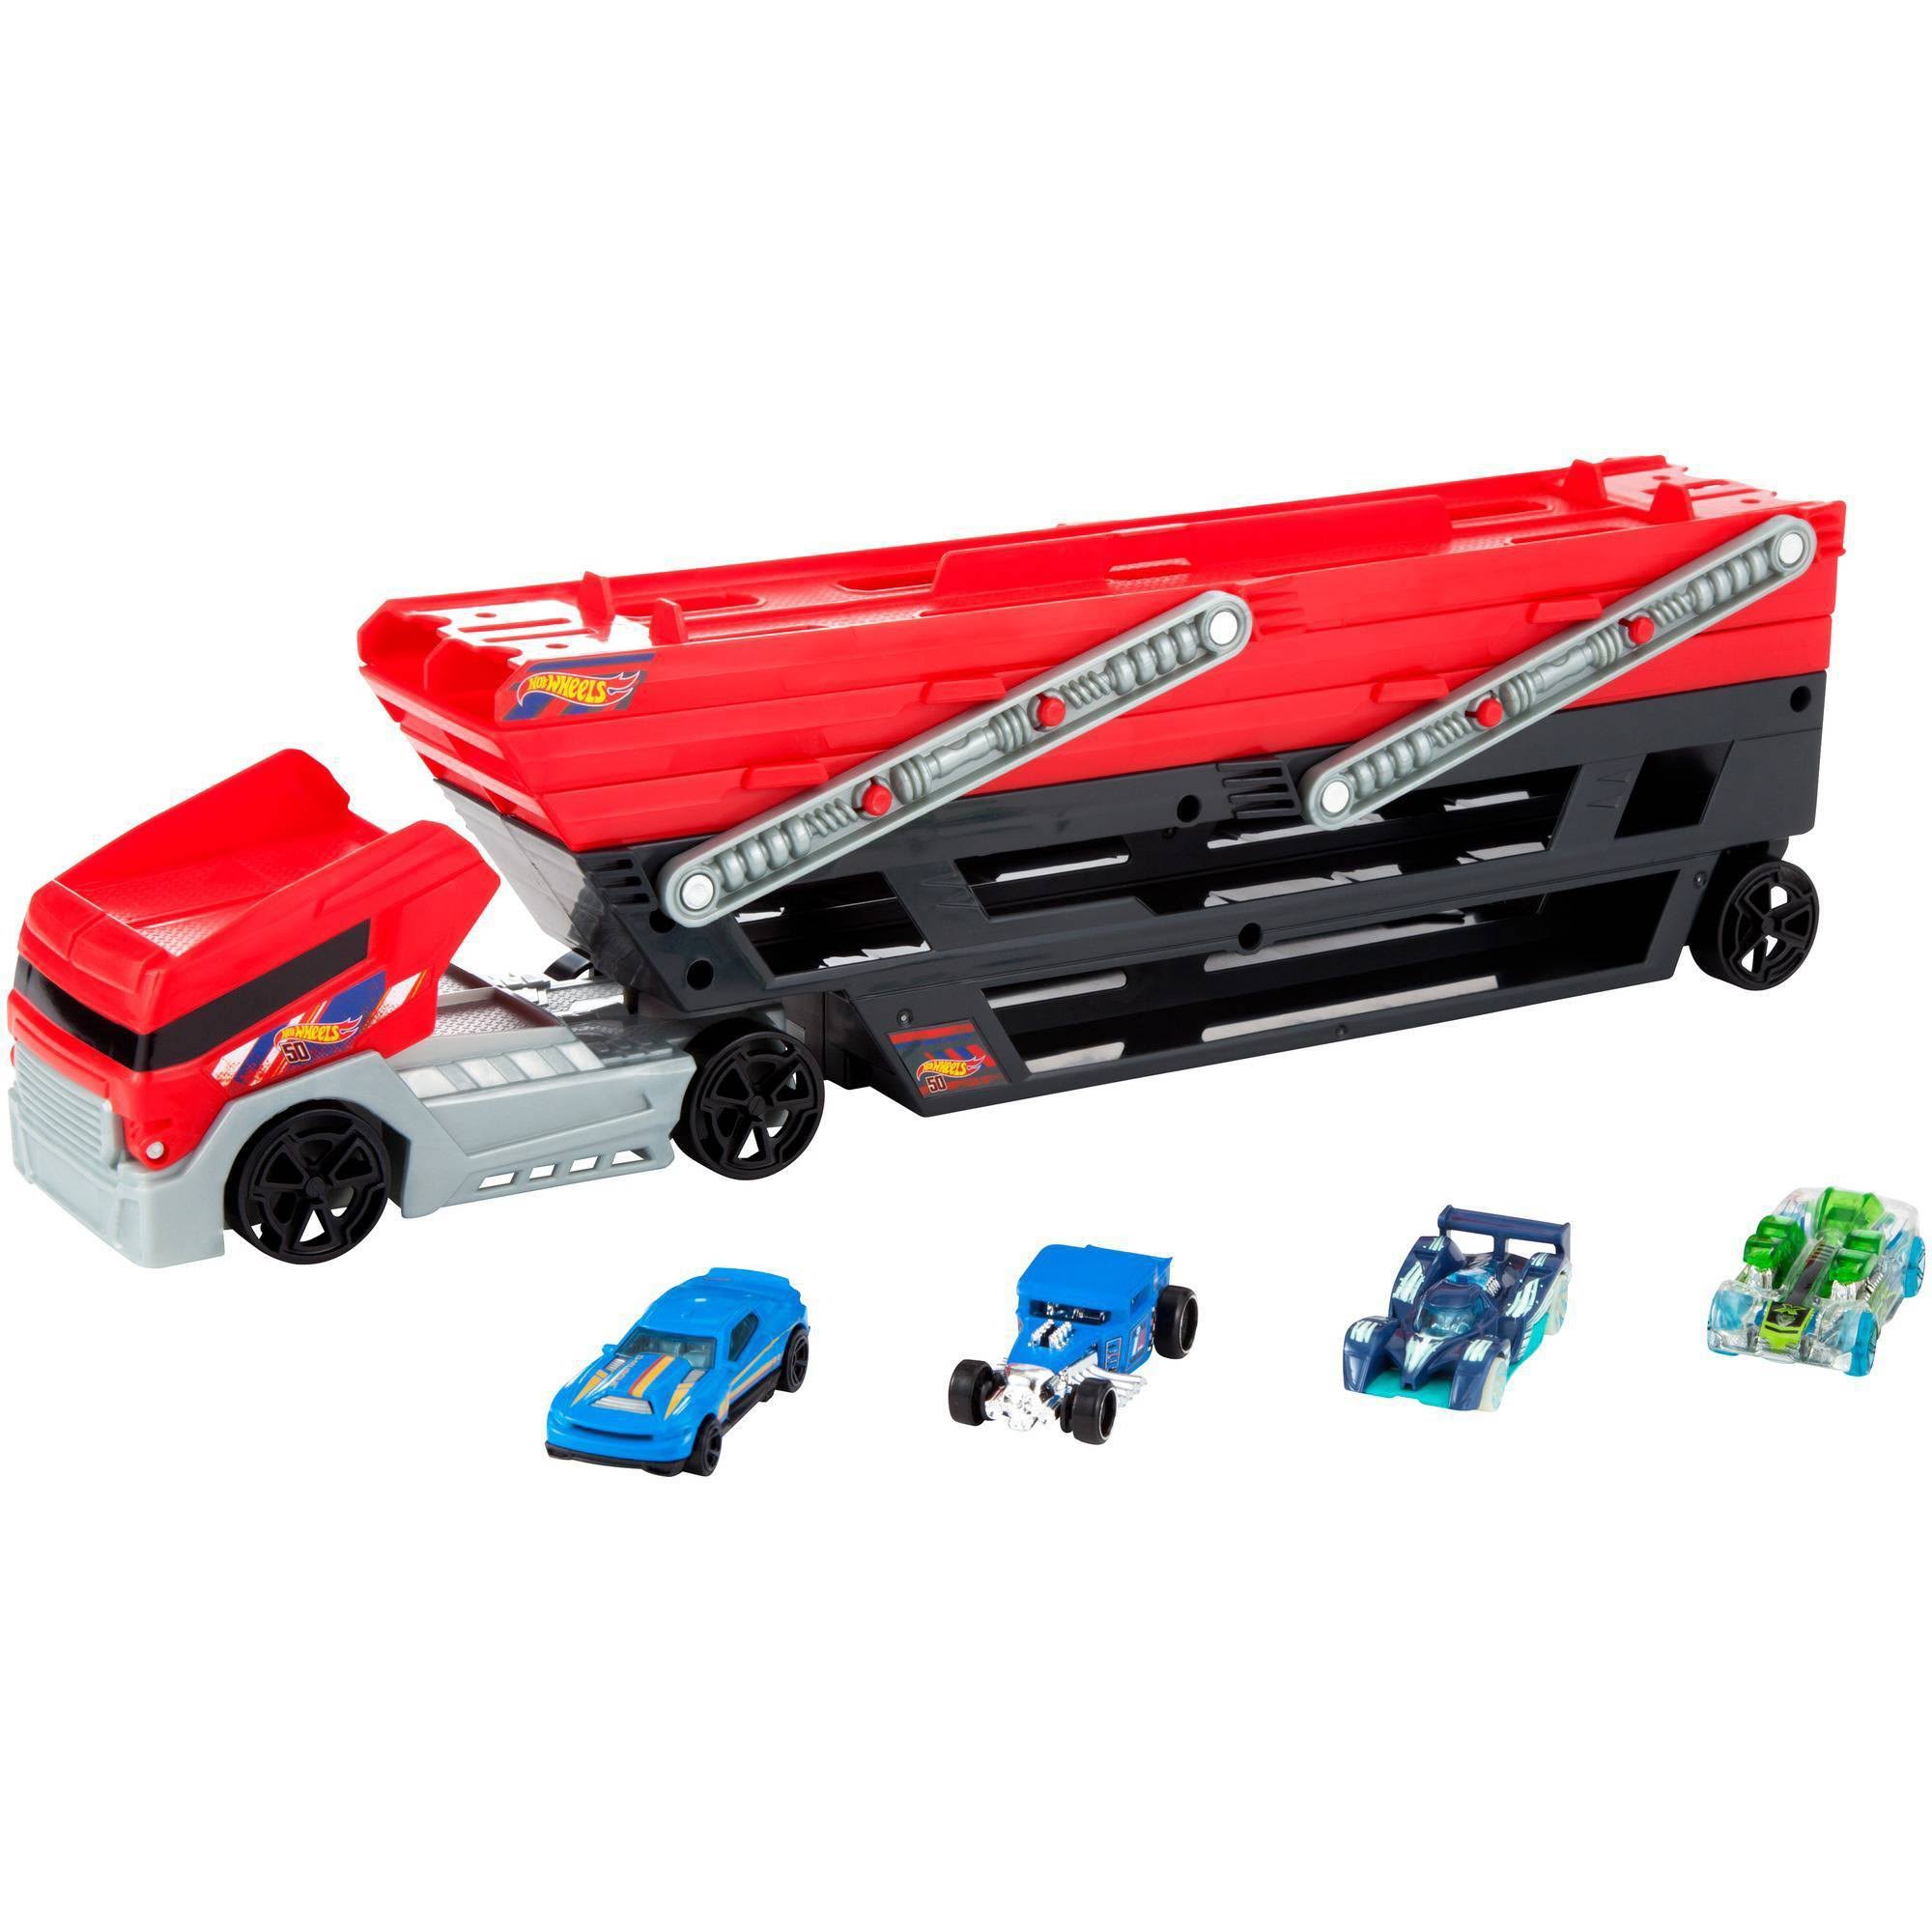 Hot Wheels Toy, Mega Hauler Vehicle